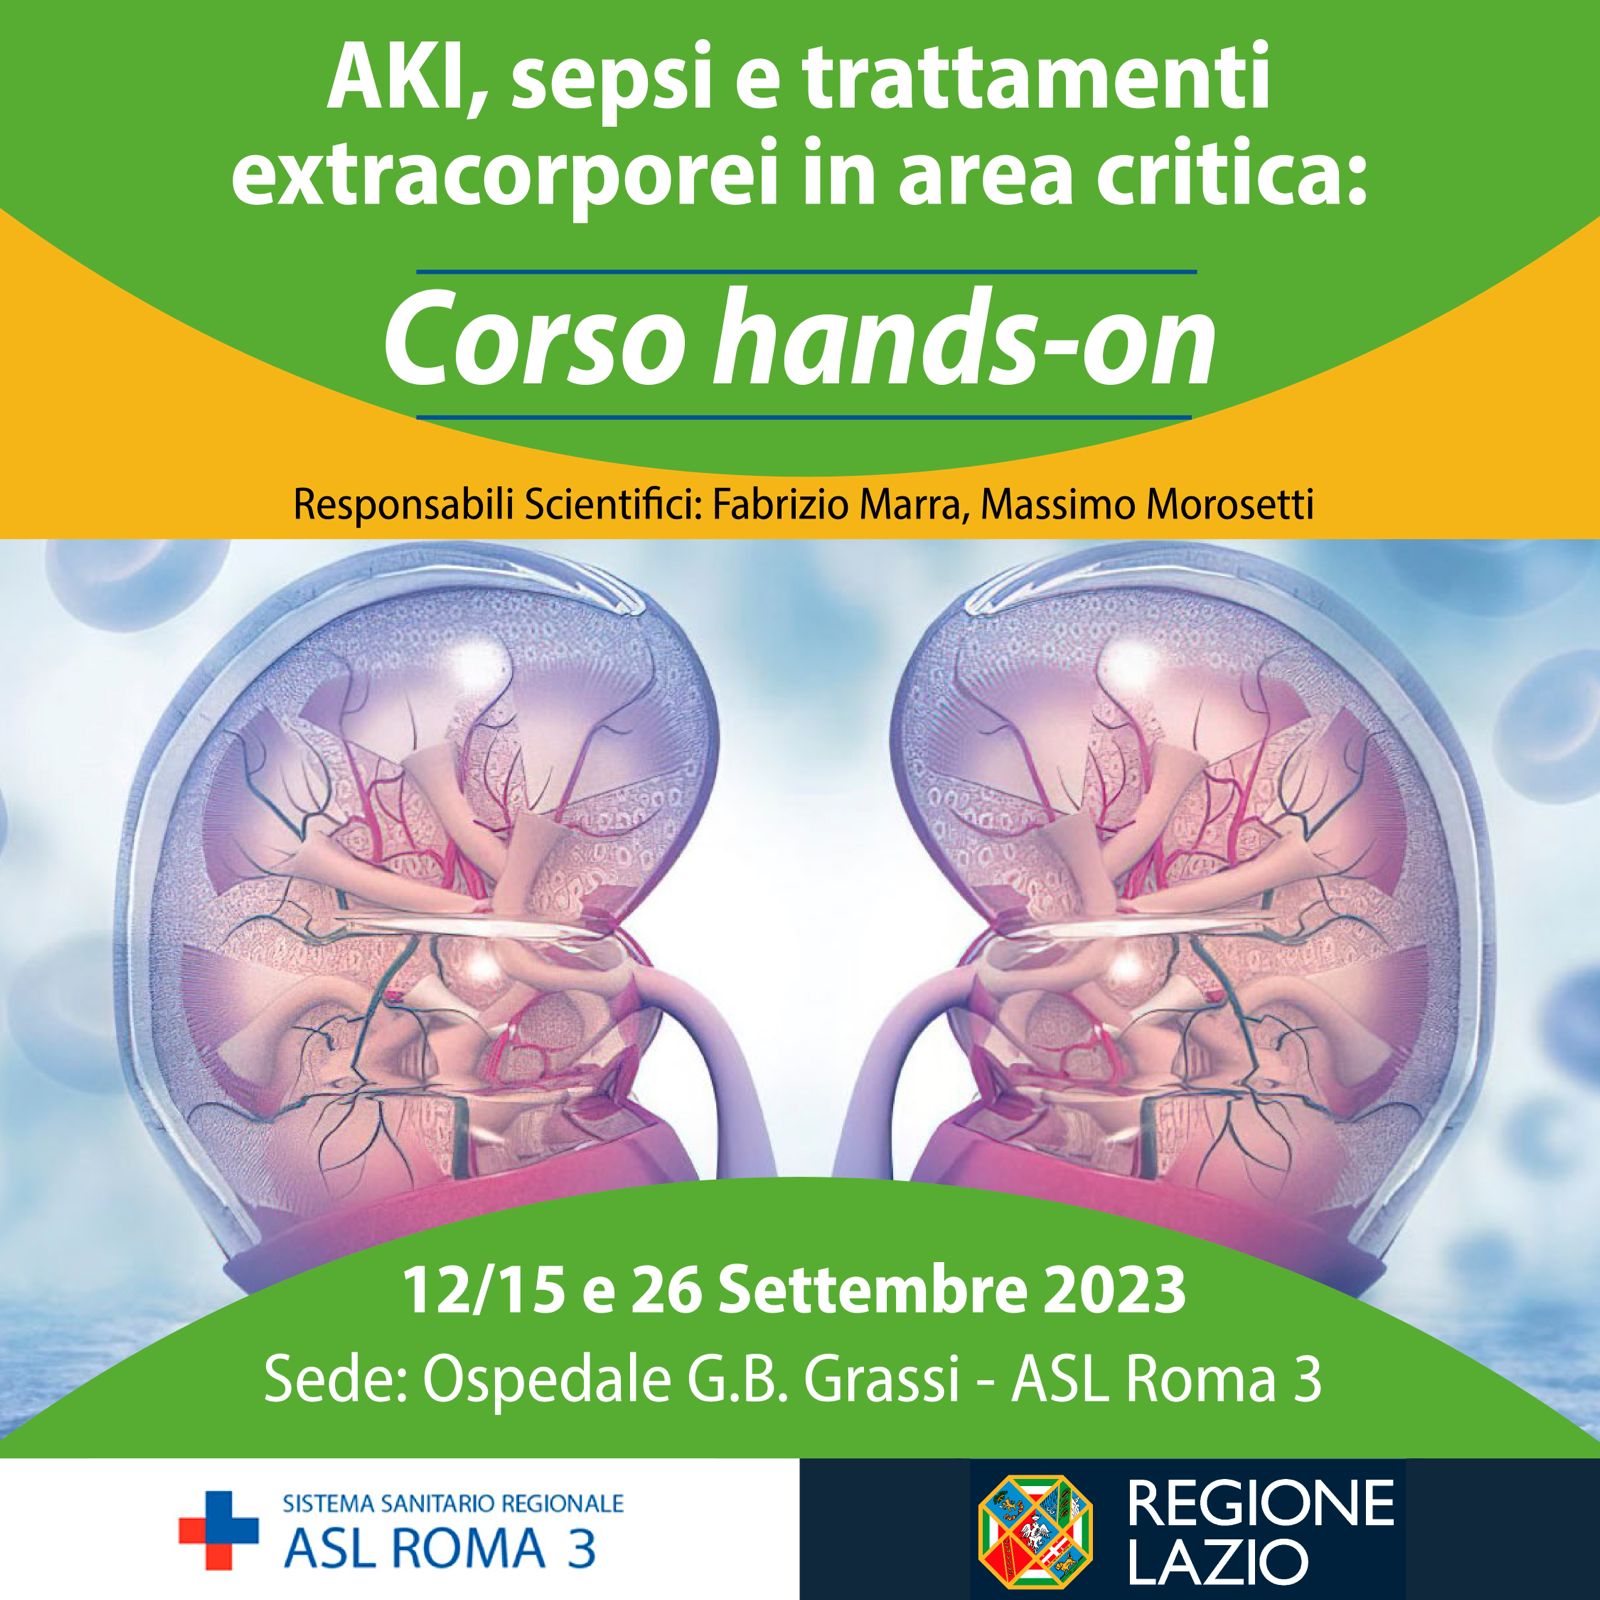 Corso Hands-on “AKI, Sepsi e Trattamenti extracorporei” – 12/15 e 26 Settembre 2023